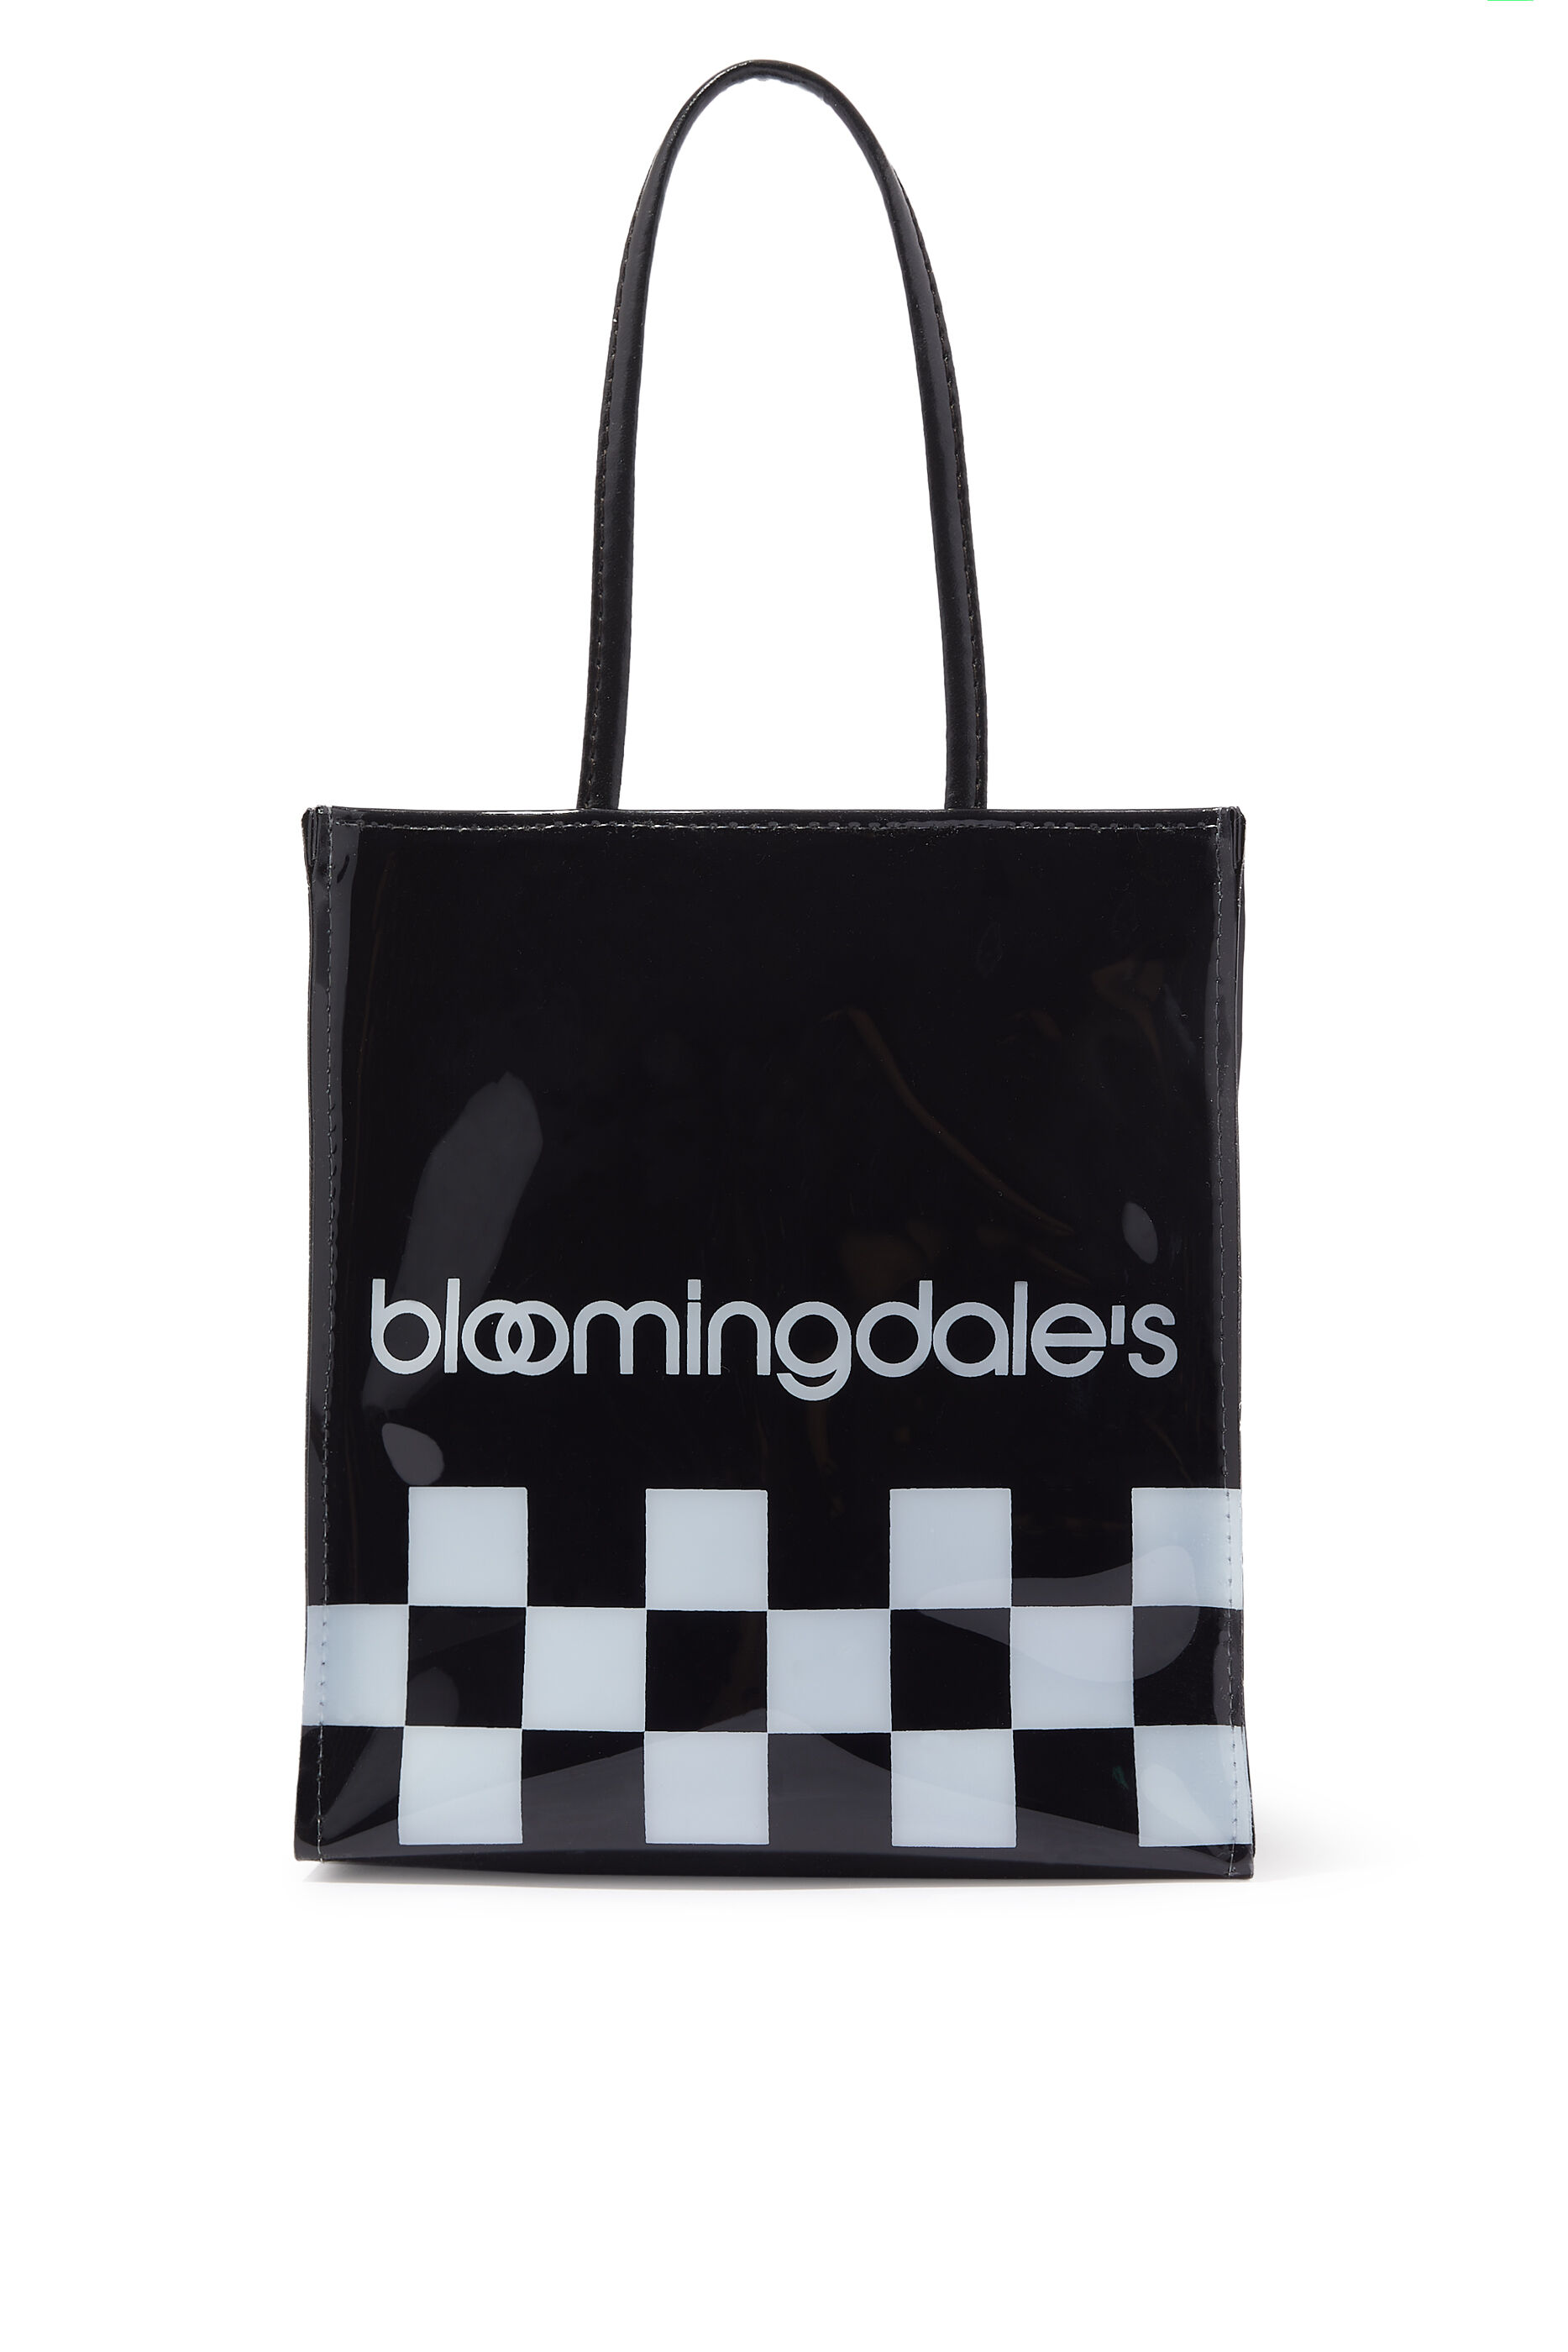 Bloomingdales little brown bag | Vinted